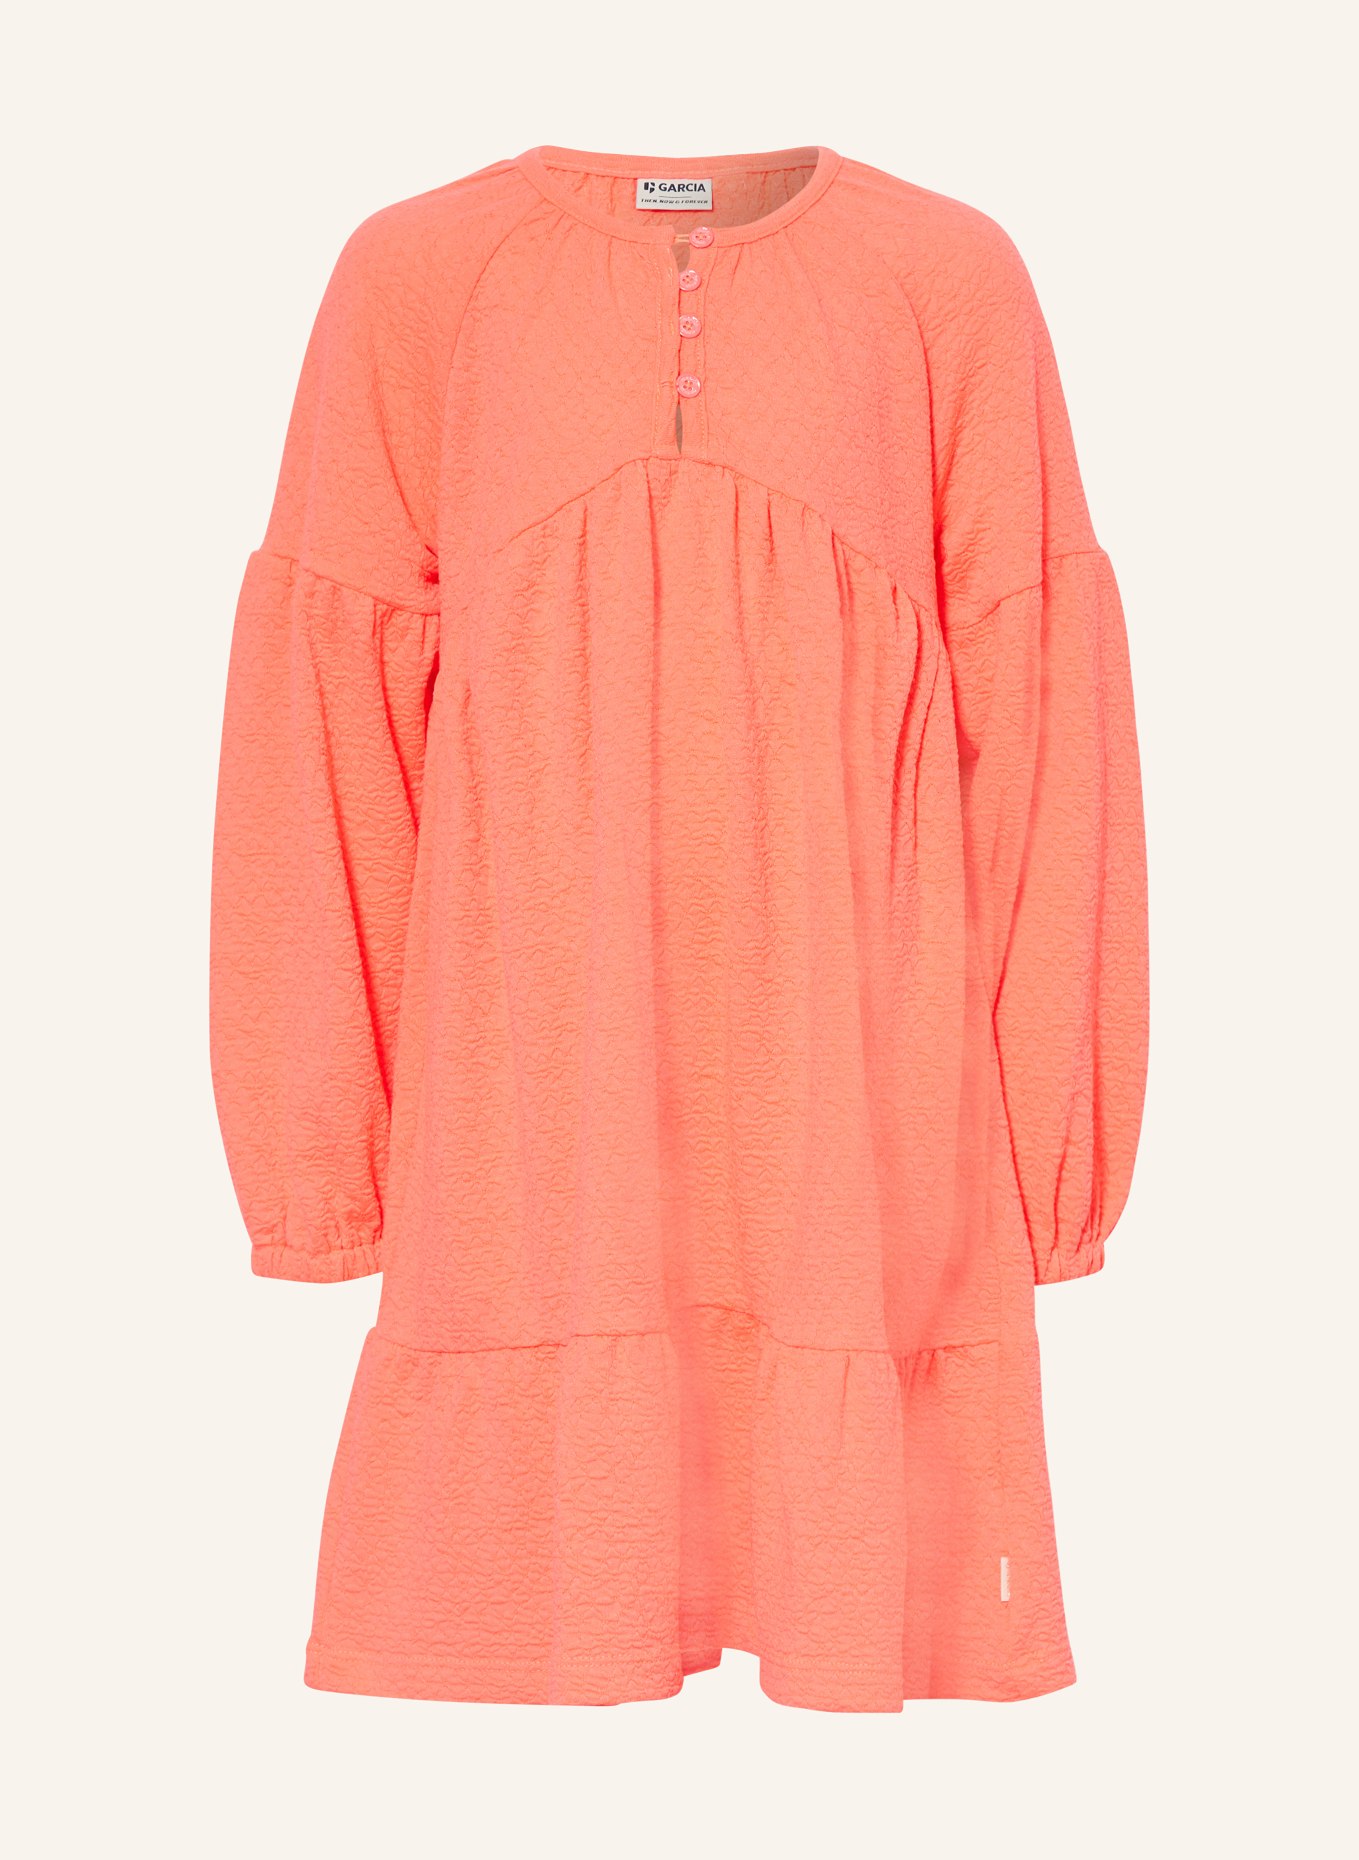 GARCIA Kleid mit Volants, Farbe: NEONPINK (Bild 1)